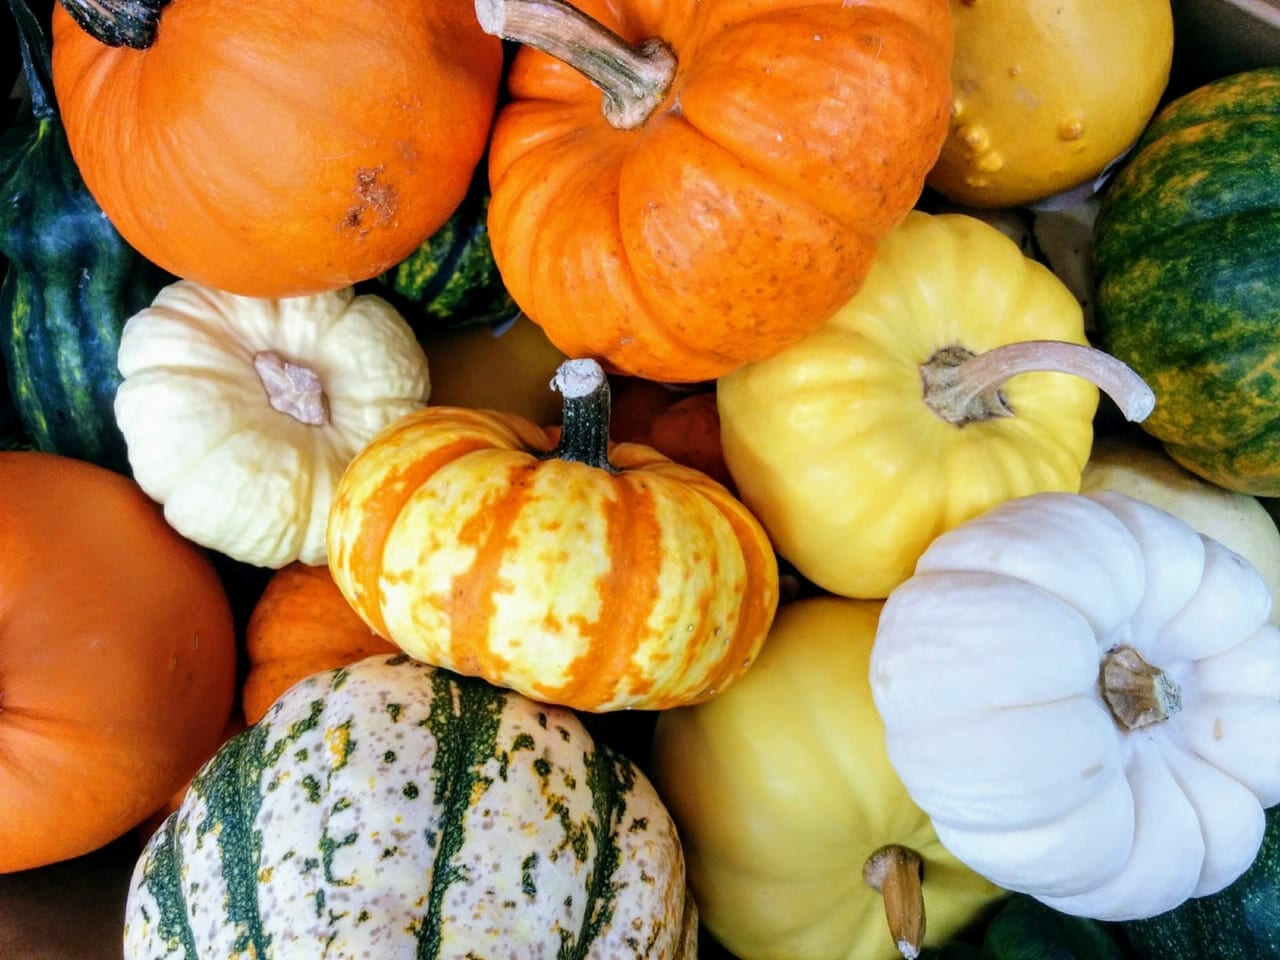 かぼちゃ 値段 カボチャ 南瓜 1キロ平均186円 相場や旬の情報まとめ Kitchen Infosite